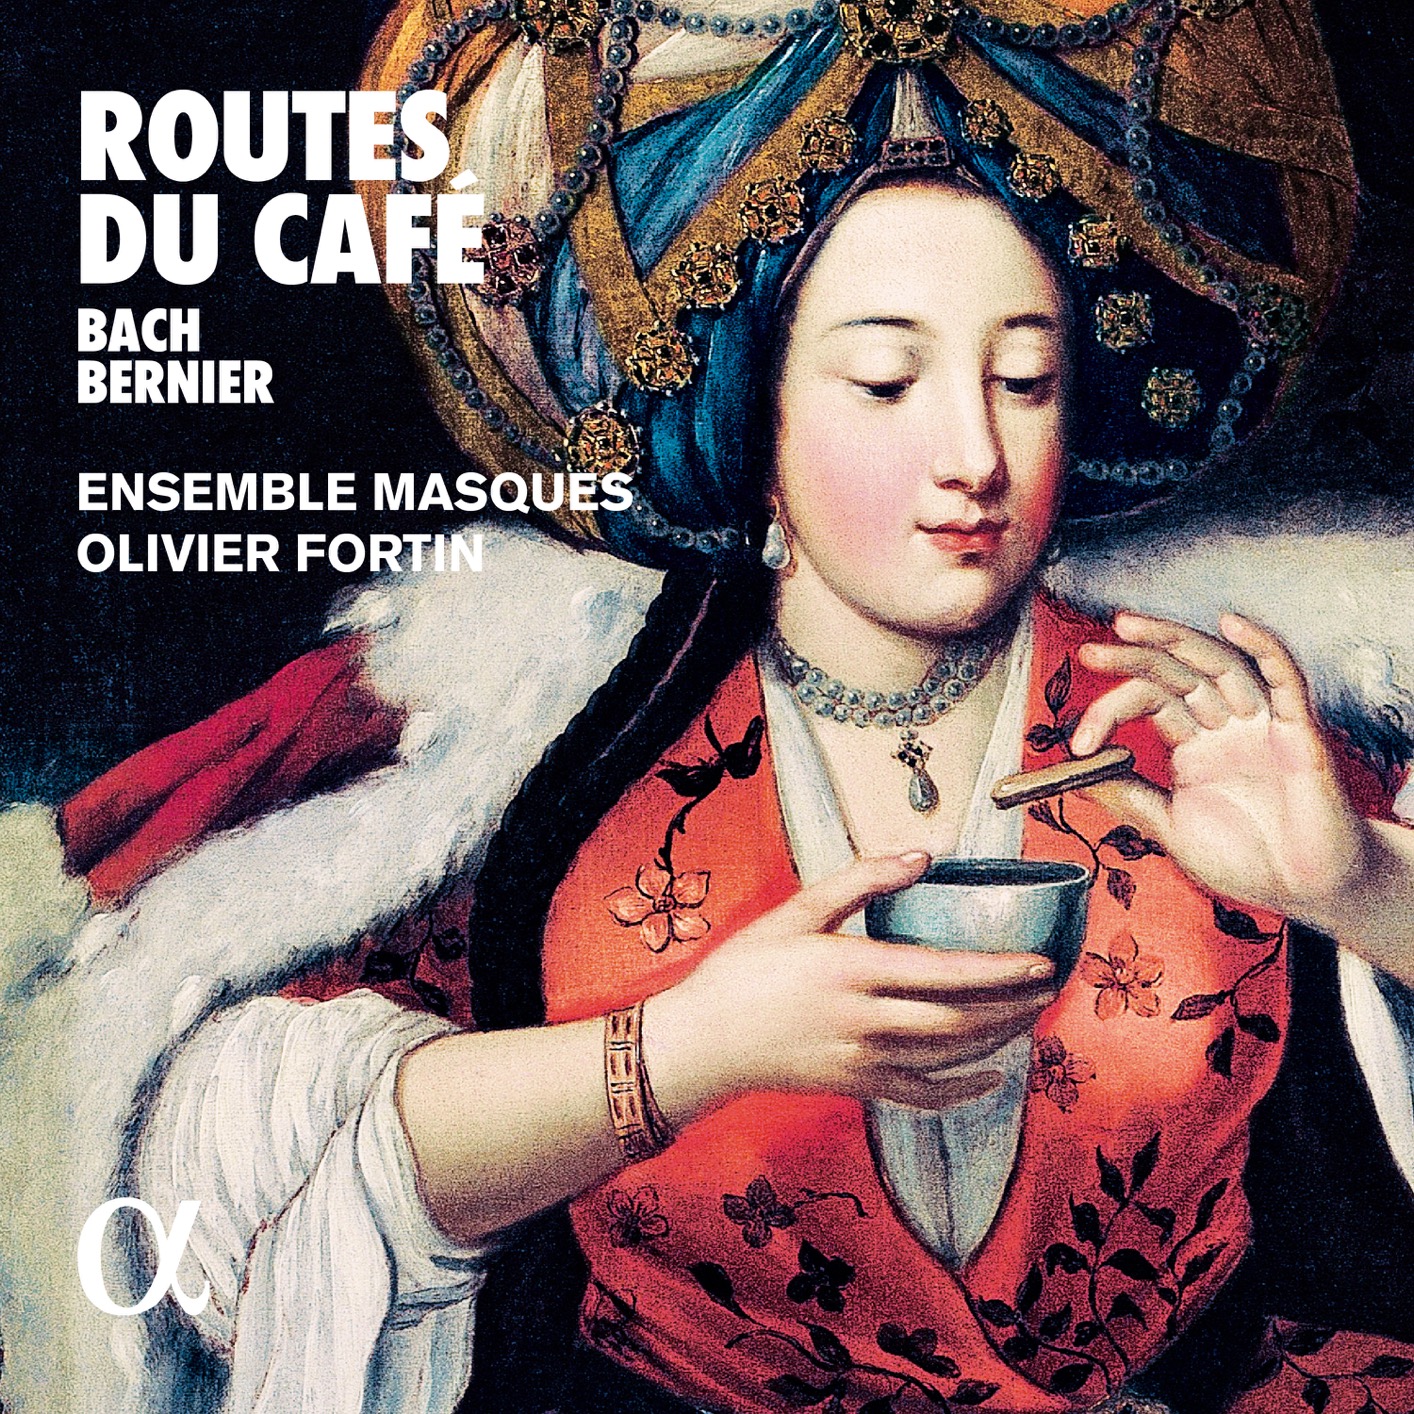 Ensemble Masques & Olivier Fortin - Bach & Bernier Routes du cafe (2019) [FLAC 24bit/96kHz]